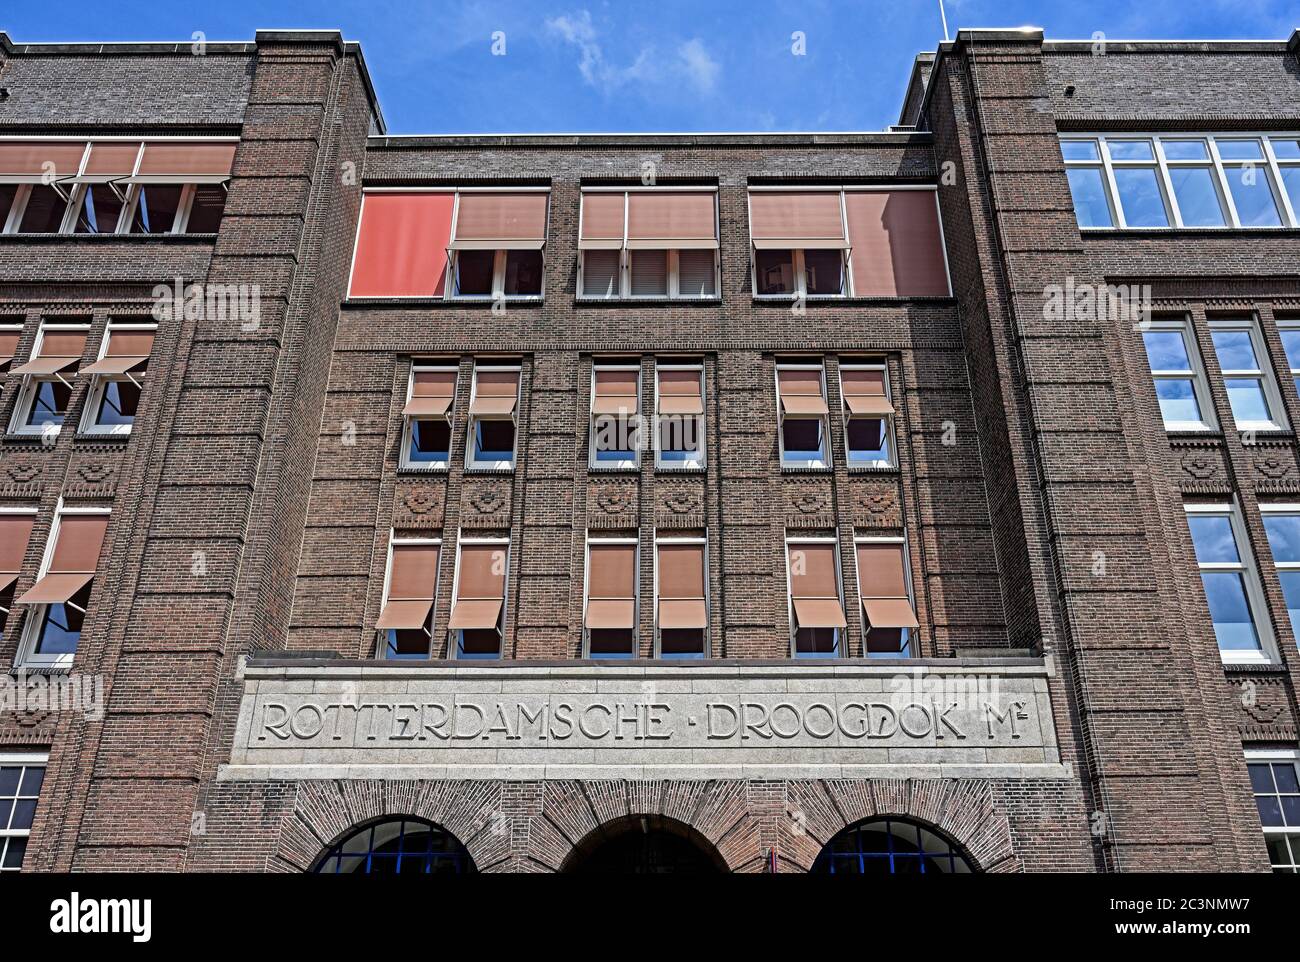 rotterdam heijplaat, pays-bas - 2020.06.17 nous: façade de l'historique rotterdamsche droogdok maatschappij (rdm) (1902-1996) administration buildi Banque D'Images